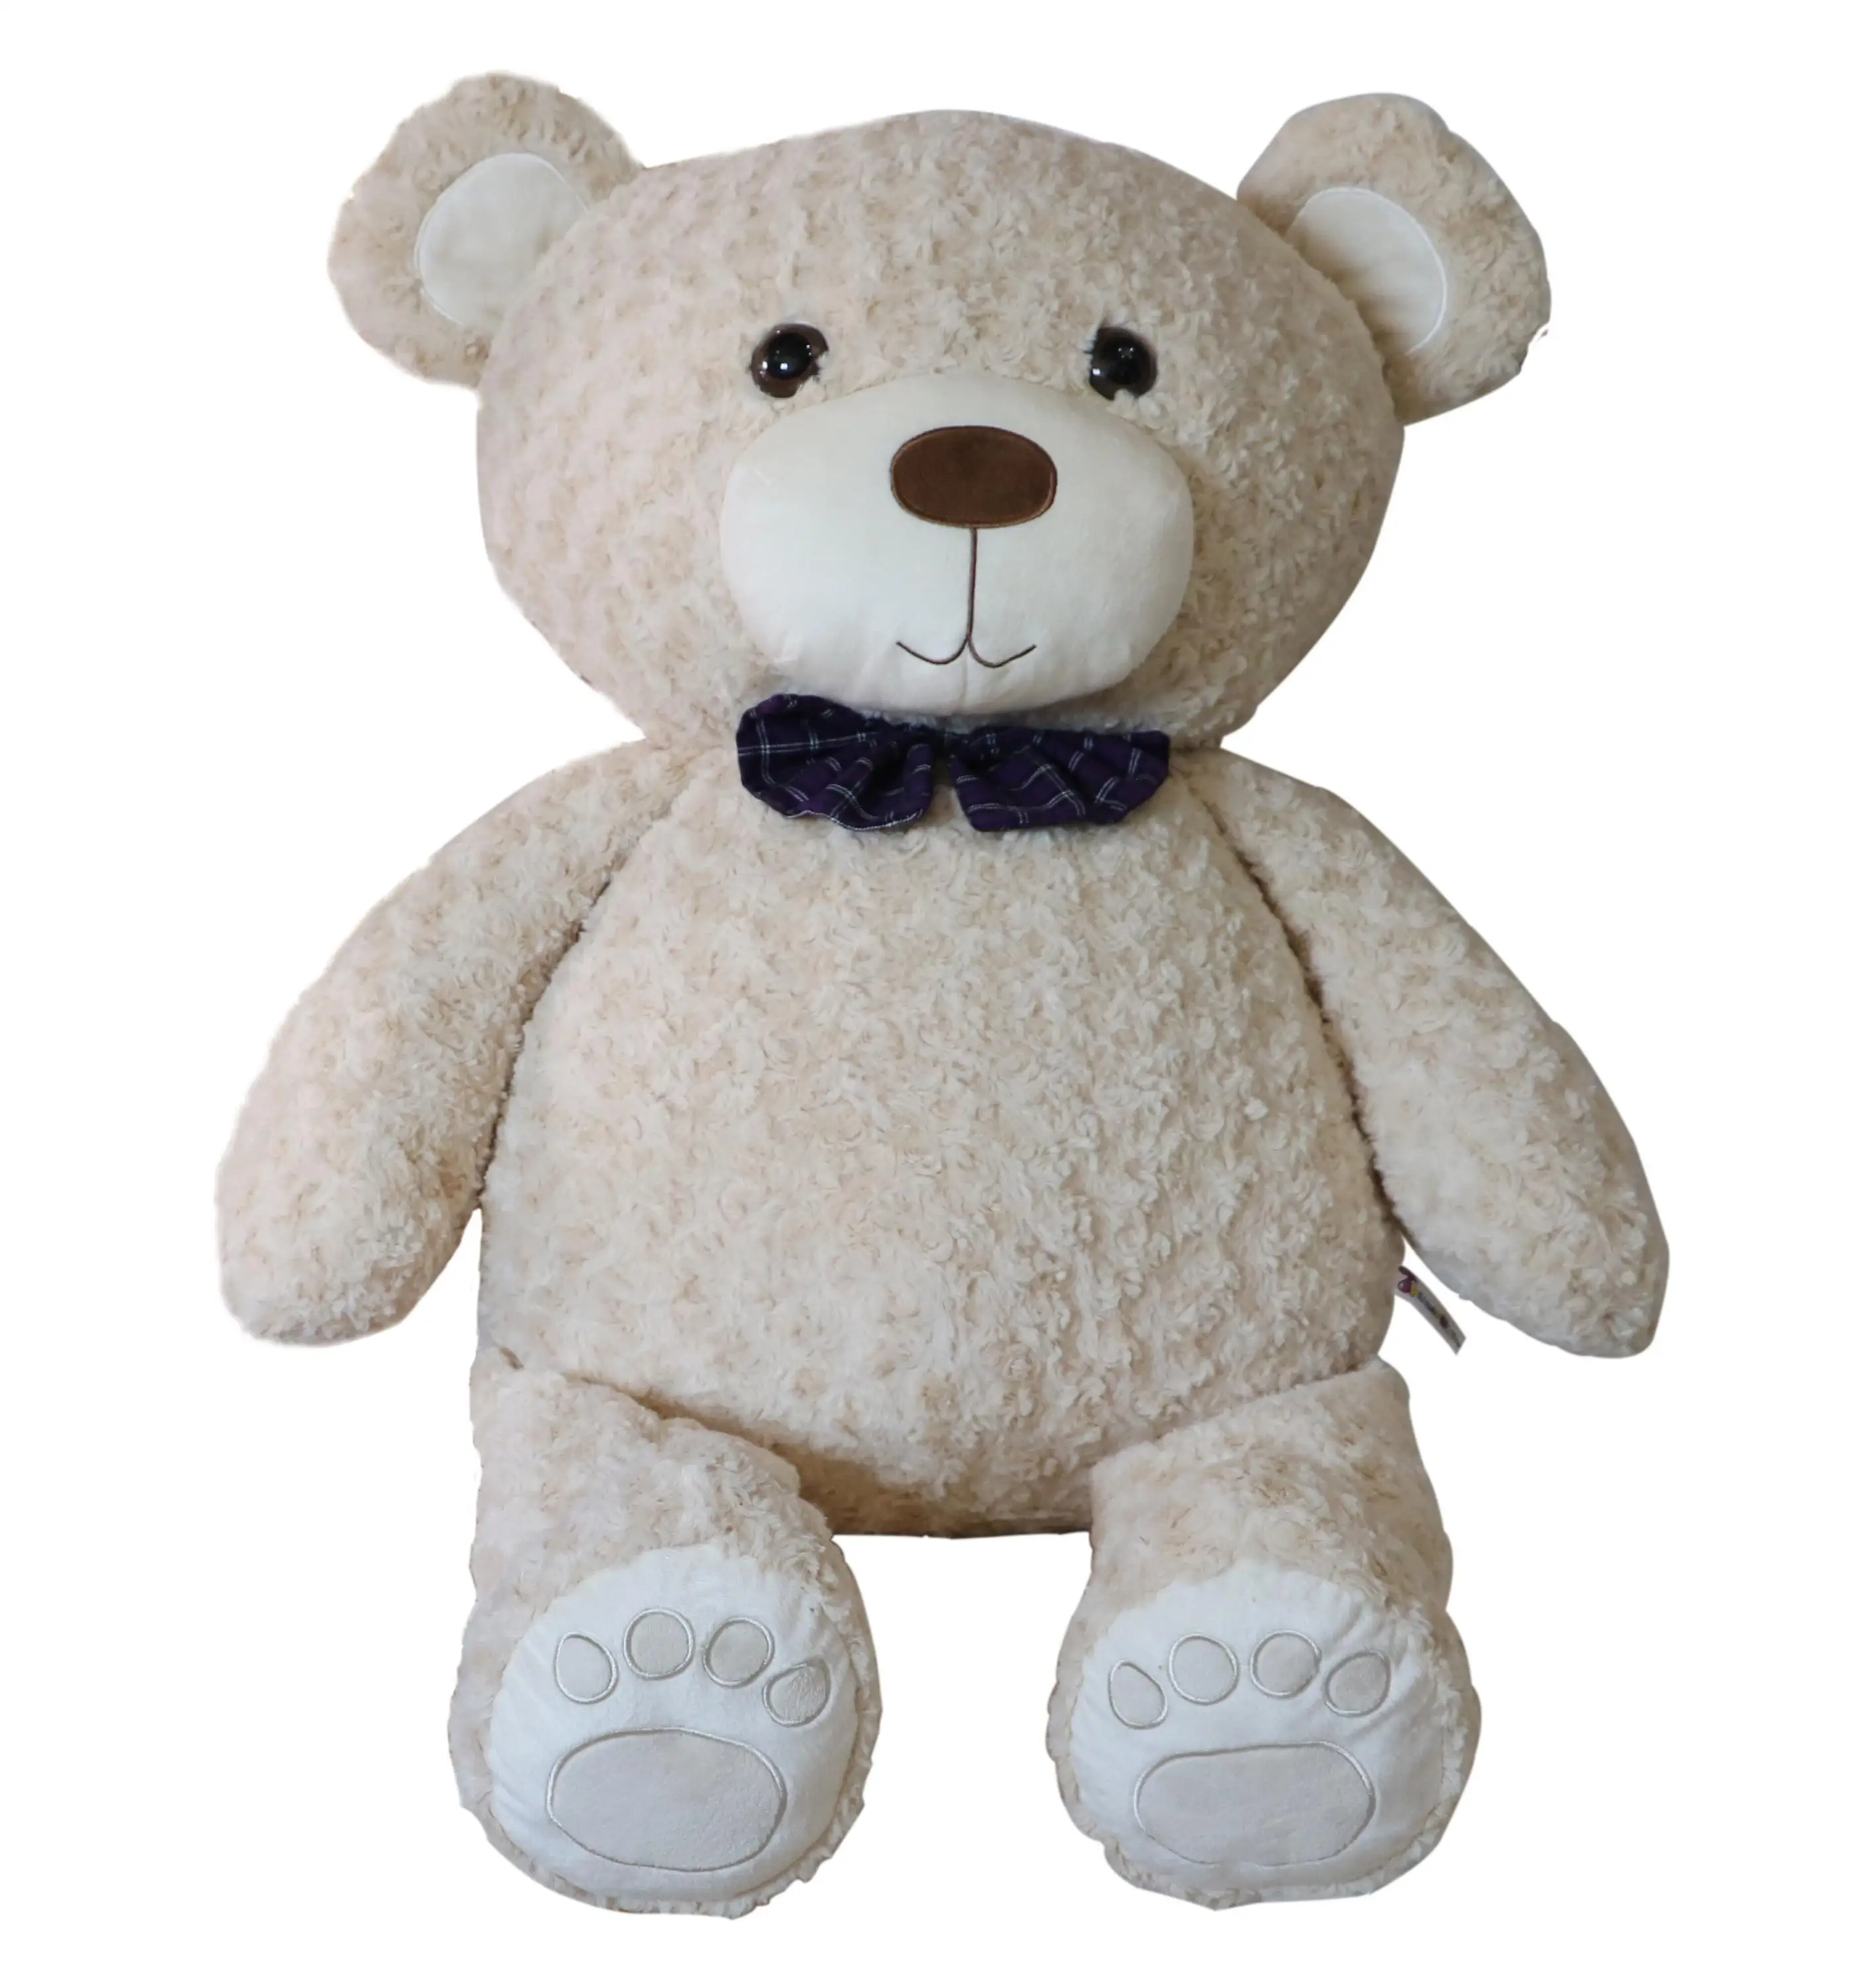 100 cm teddy bear